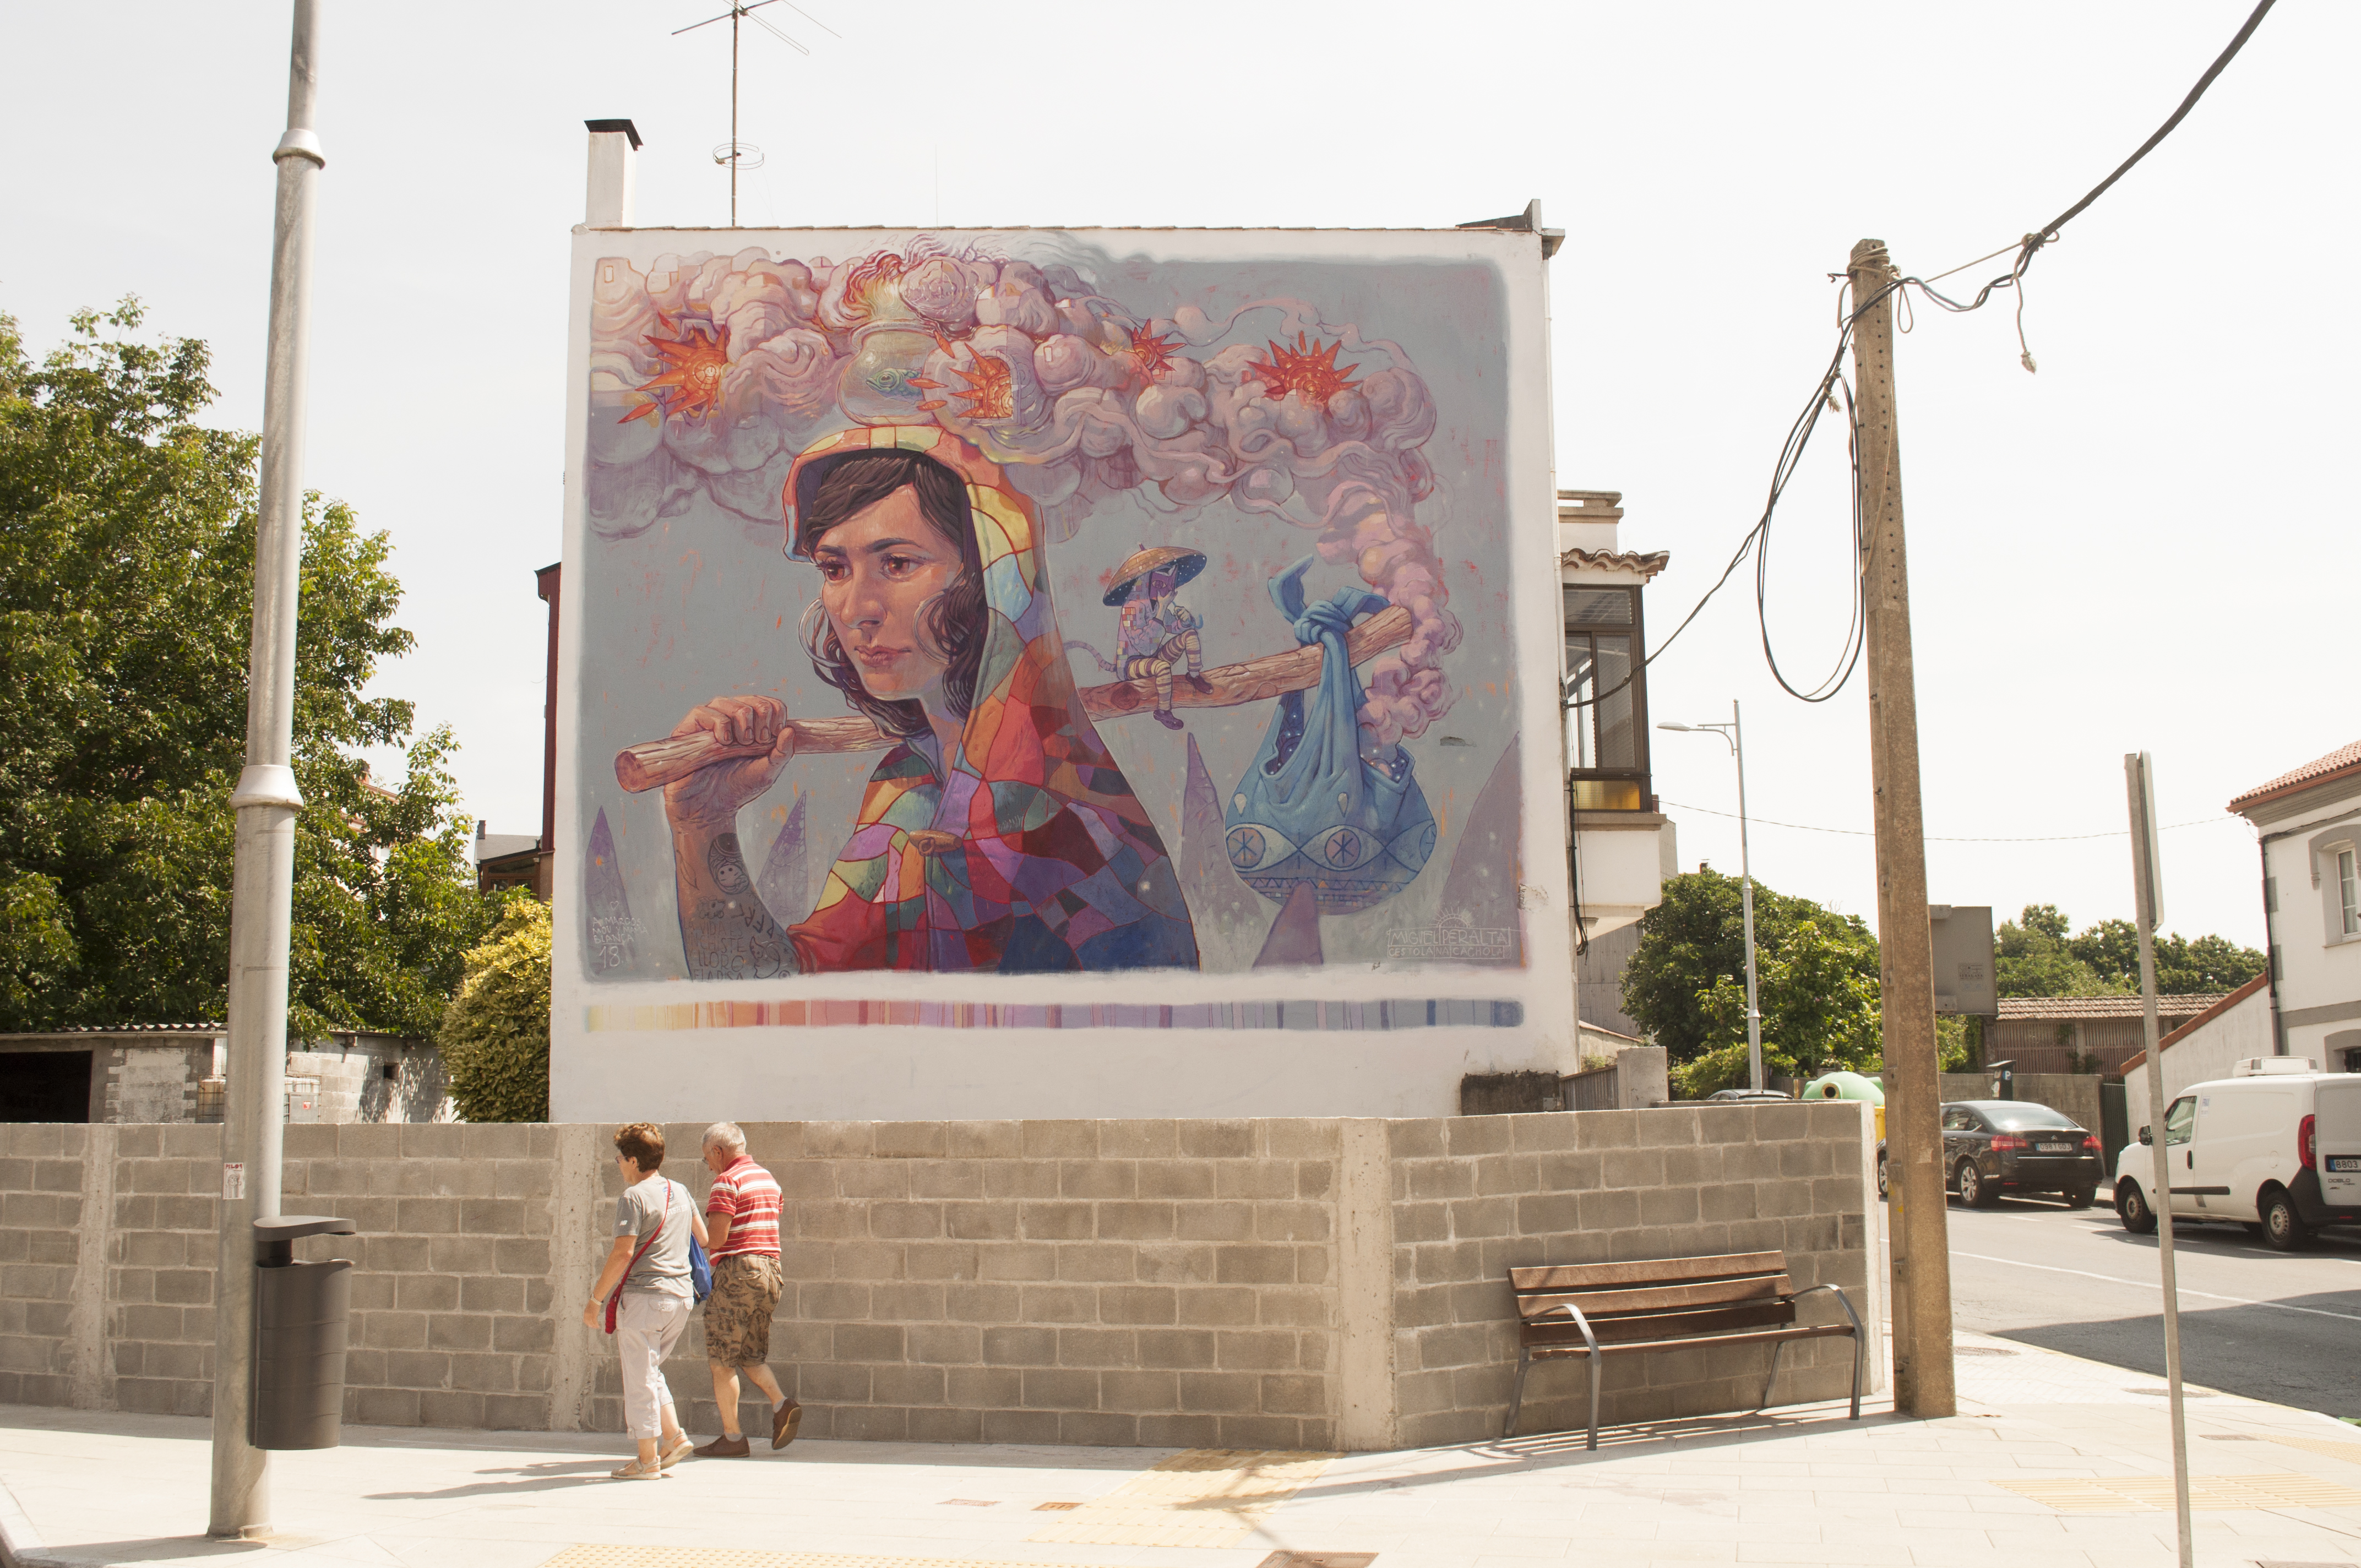 Miguel Peralta&mdash;Wall by MIGUEL PERALTA for DESORDES CREATIVAS 2018 in Ordes (Galicia-Spain)